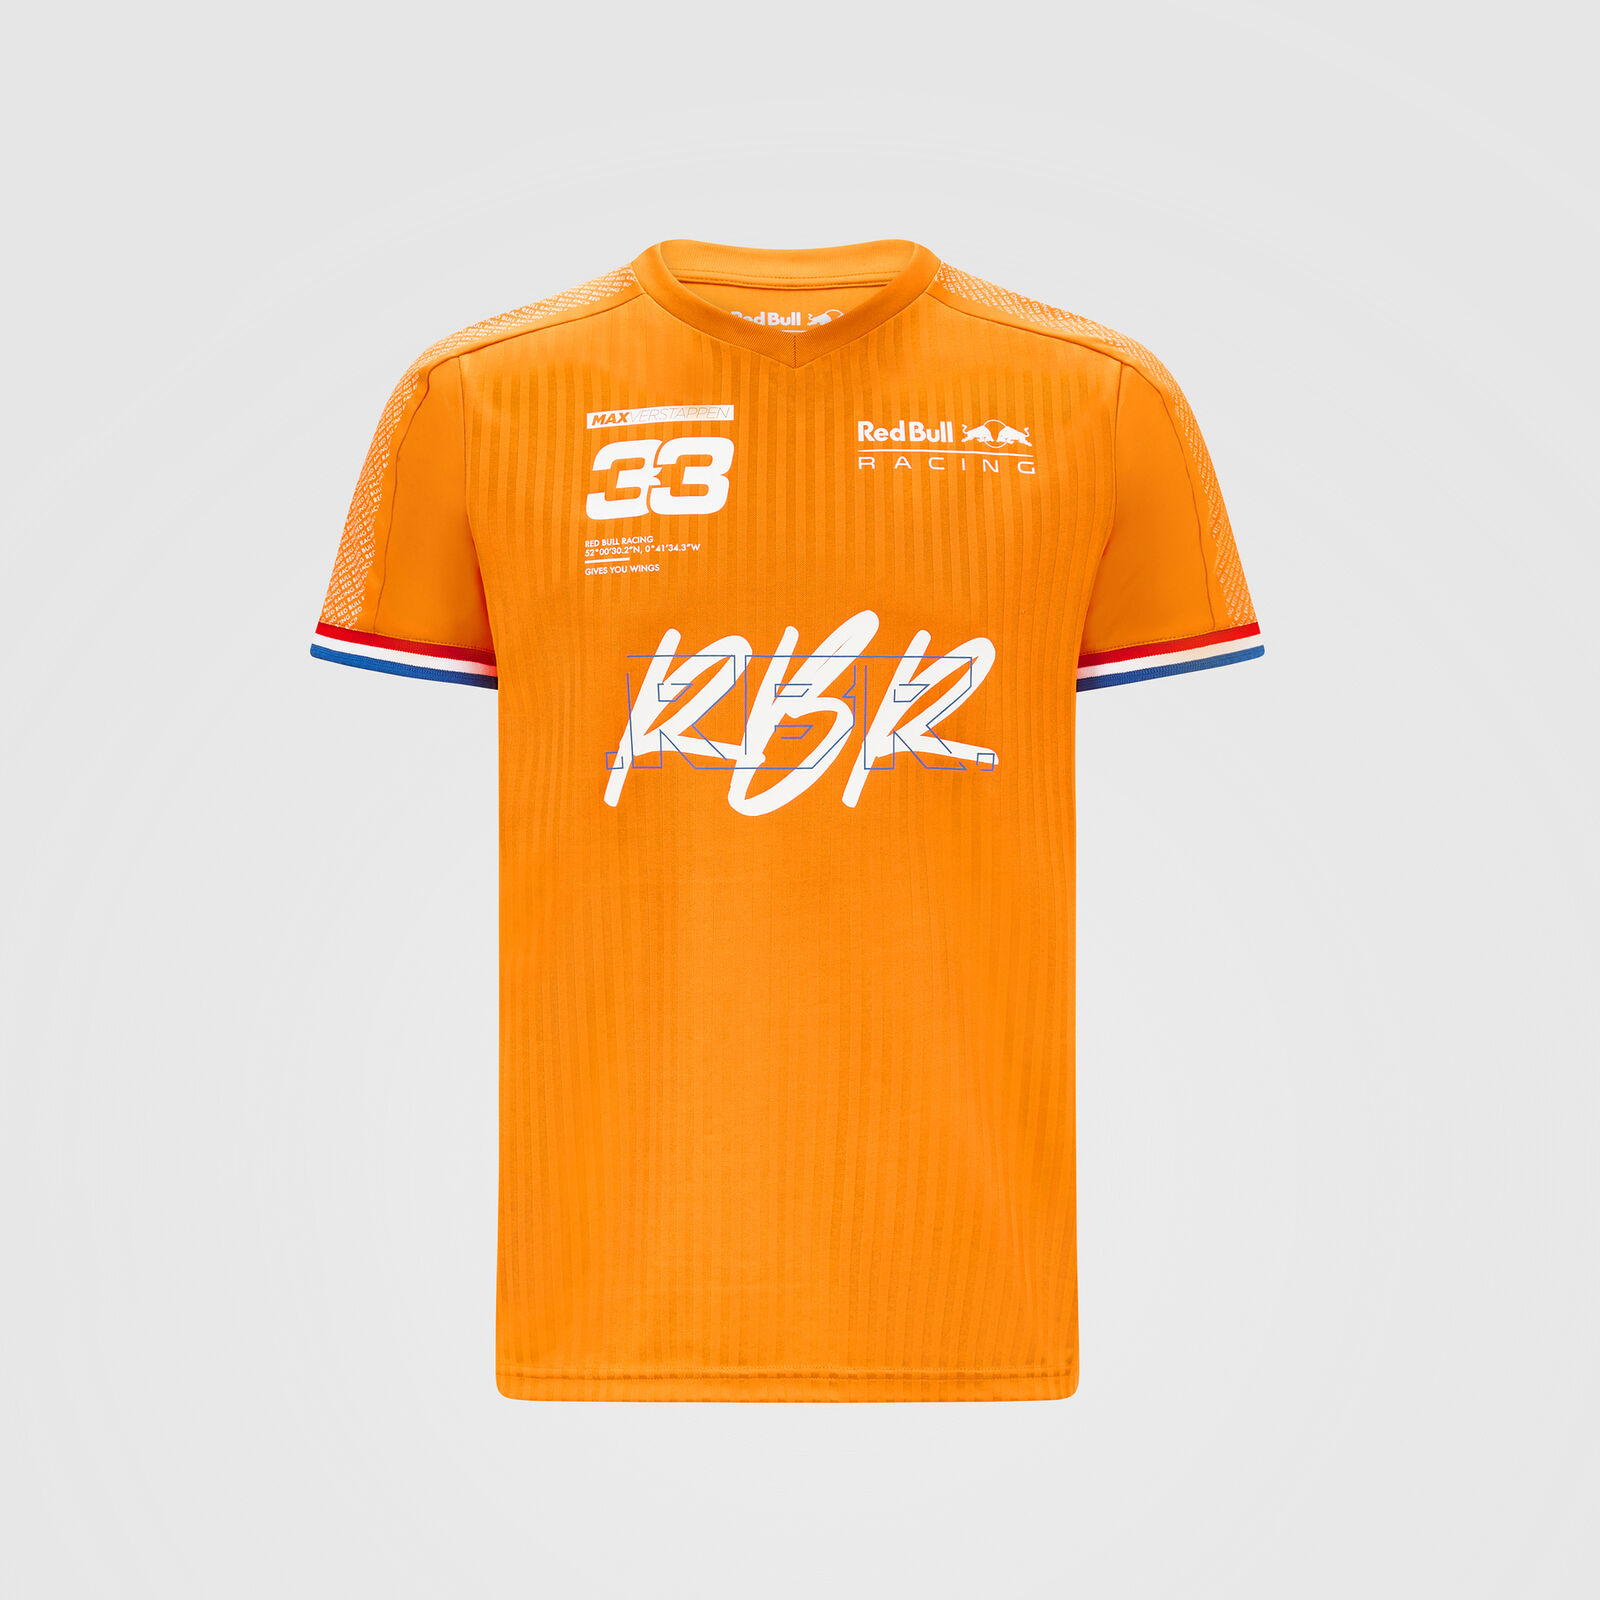 Camiseta naranja Max Rbr - Bull Racing | Fuel For Fans